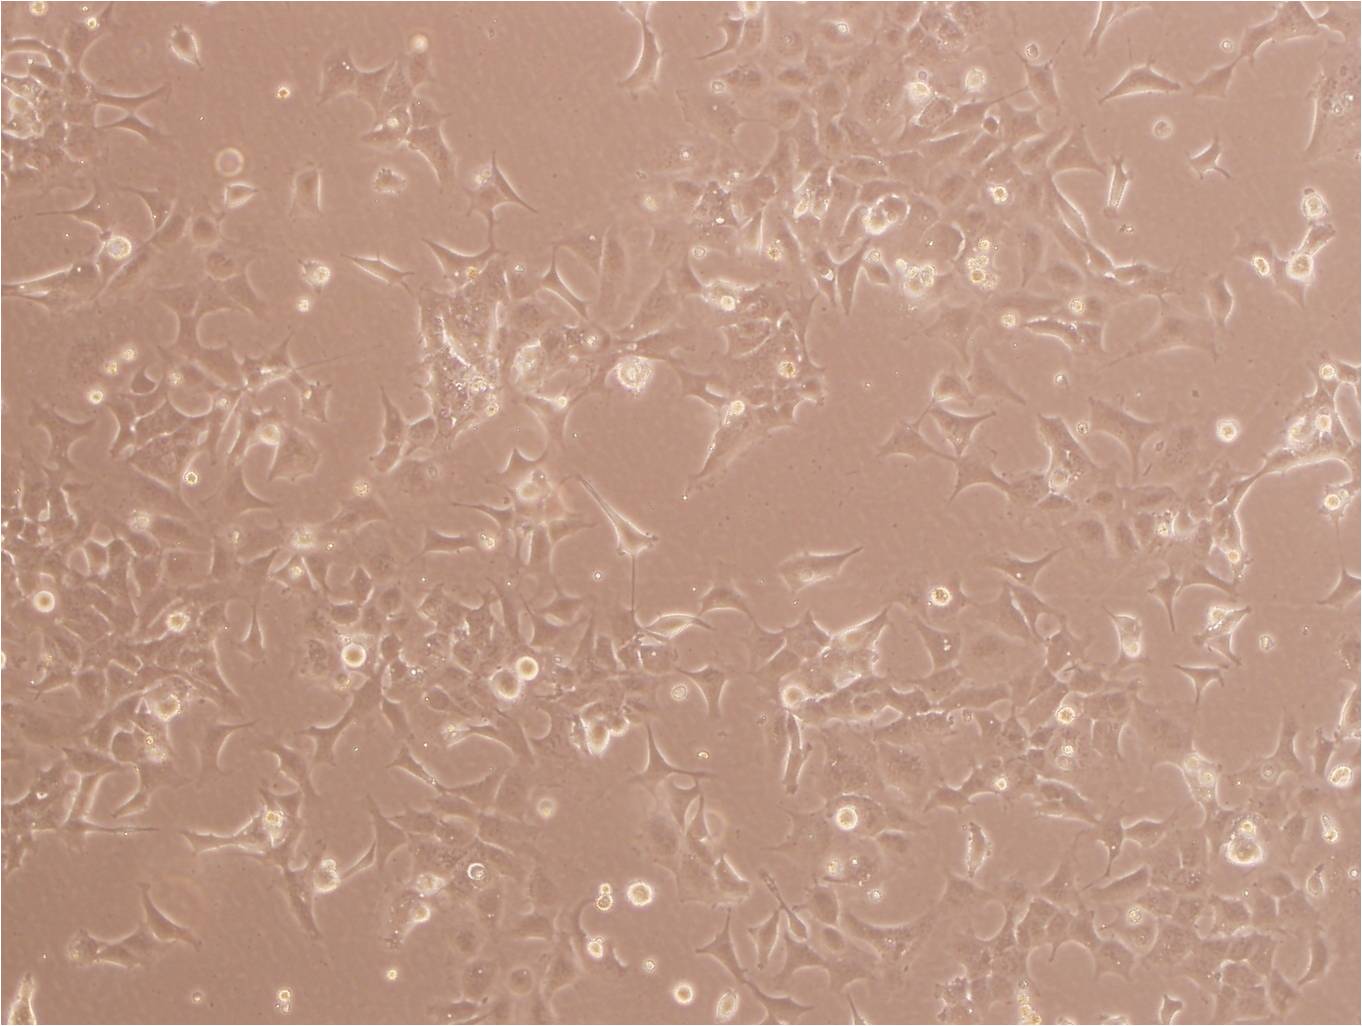 LN-382 epithelioid cells人脑胶质瘤细胞系